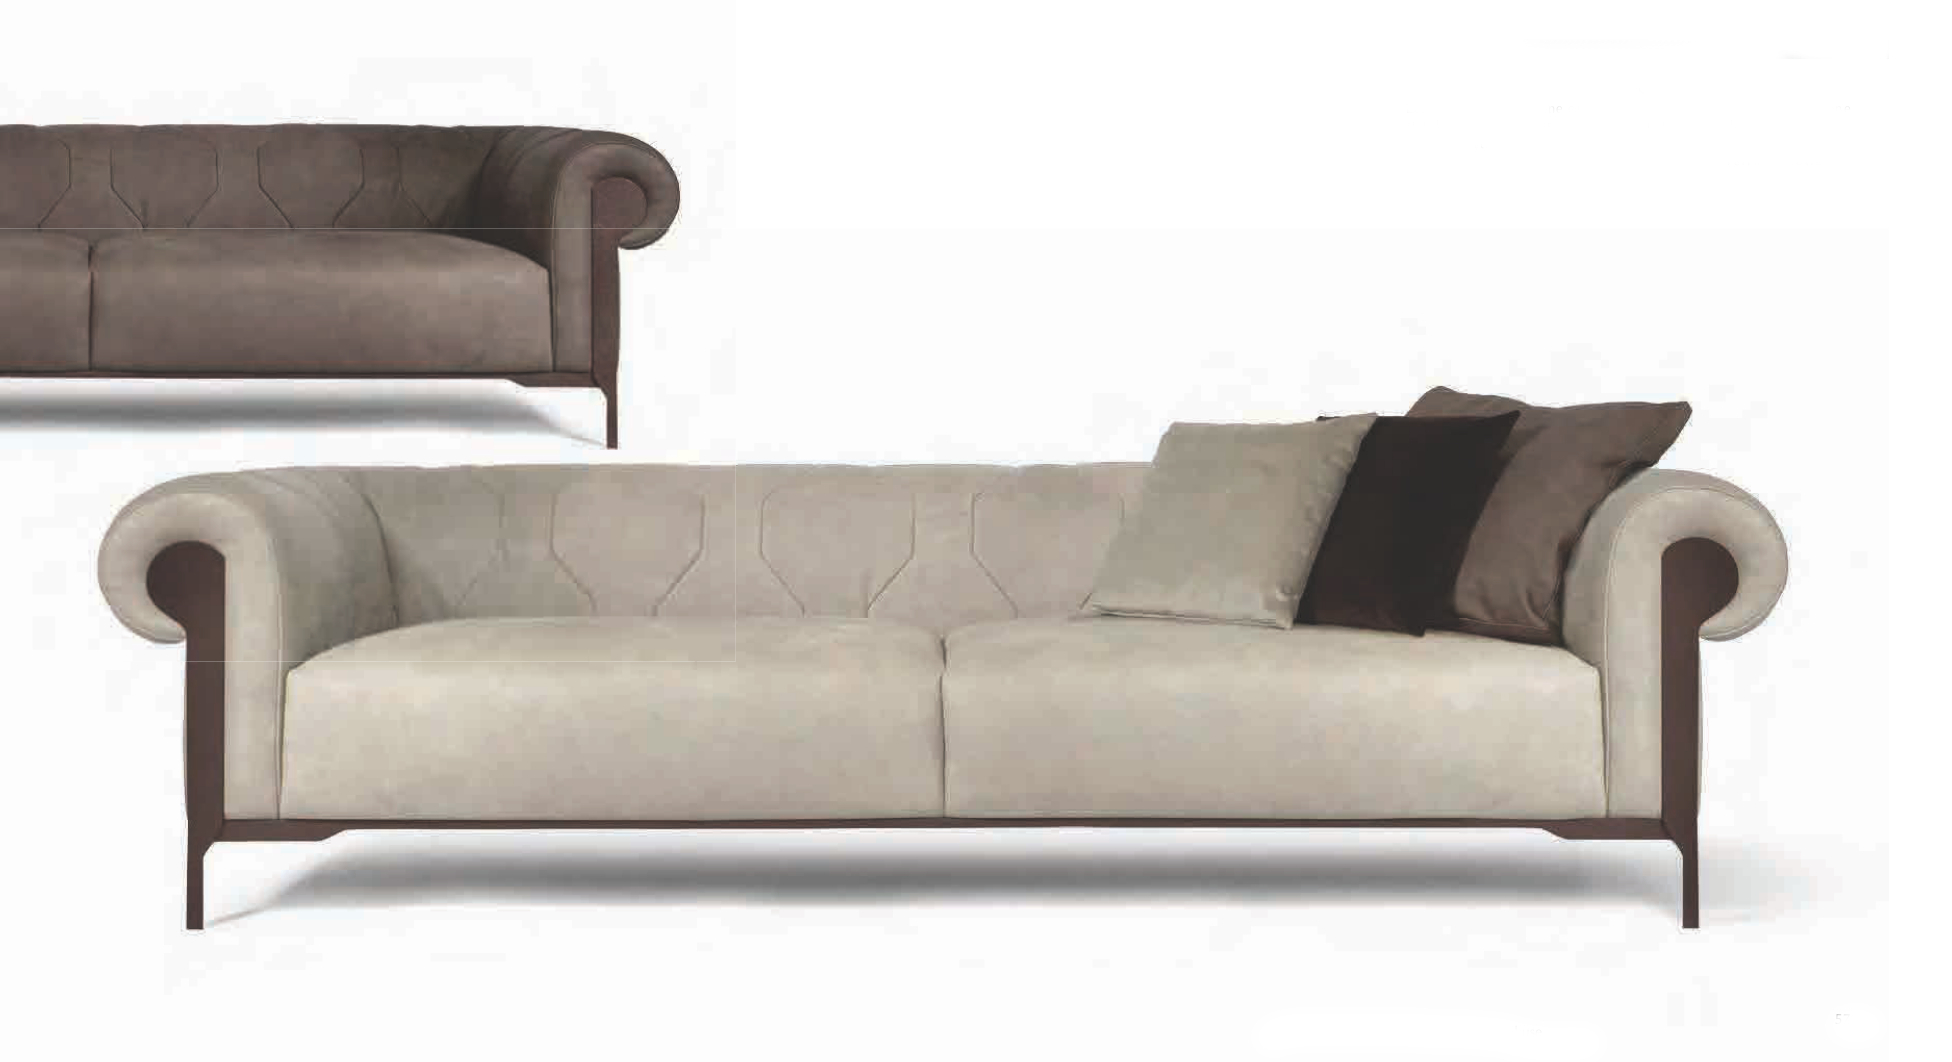 aston martin v125 sofa buy in marbella .jpg